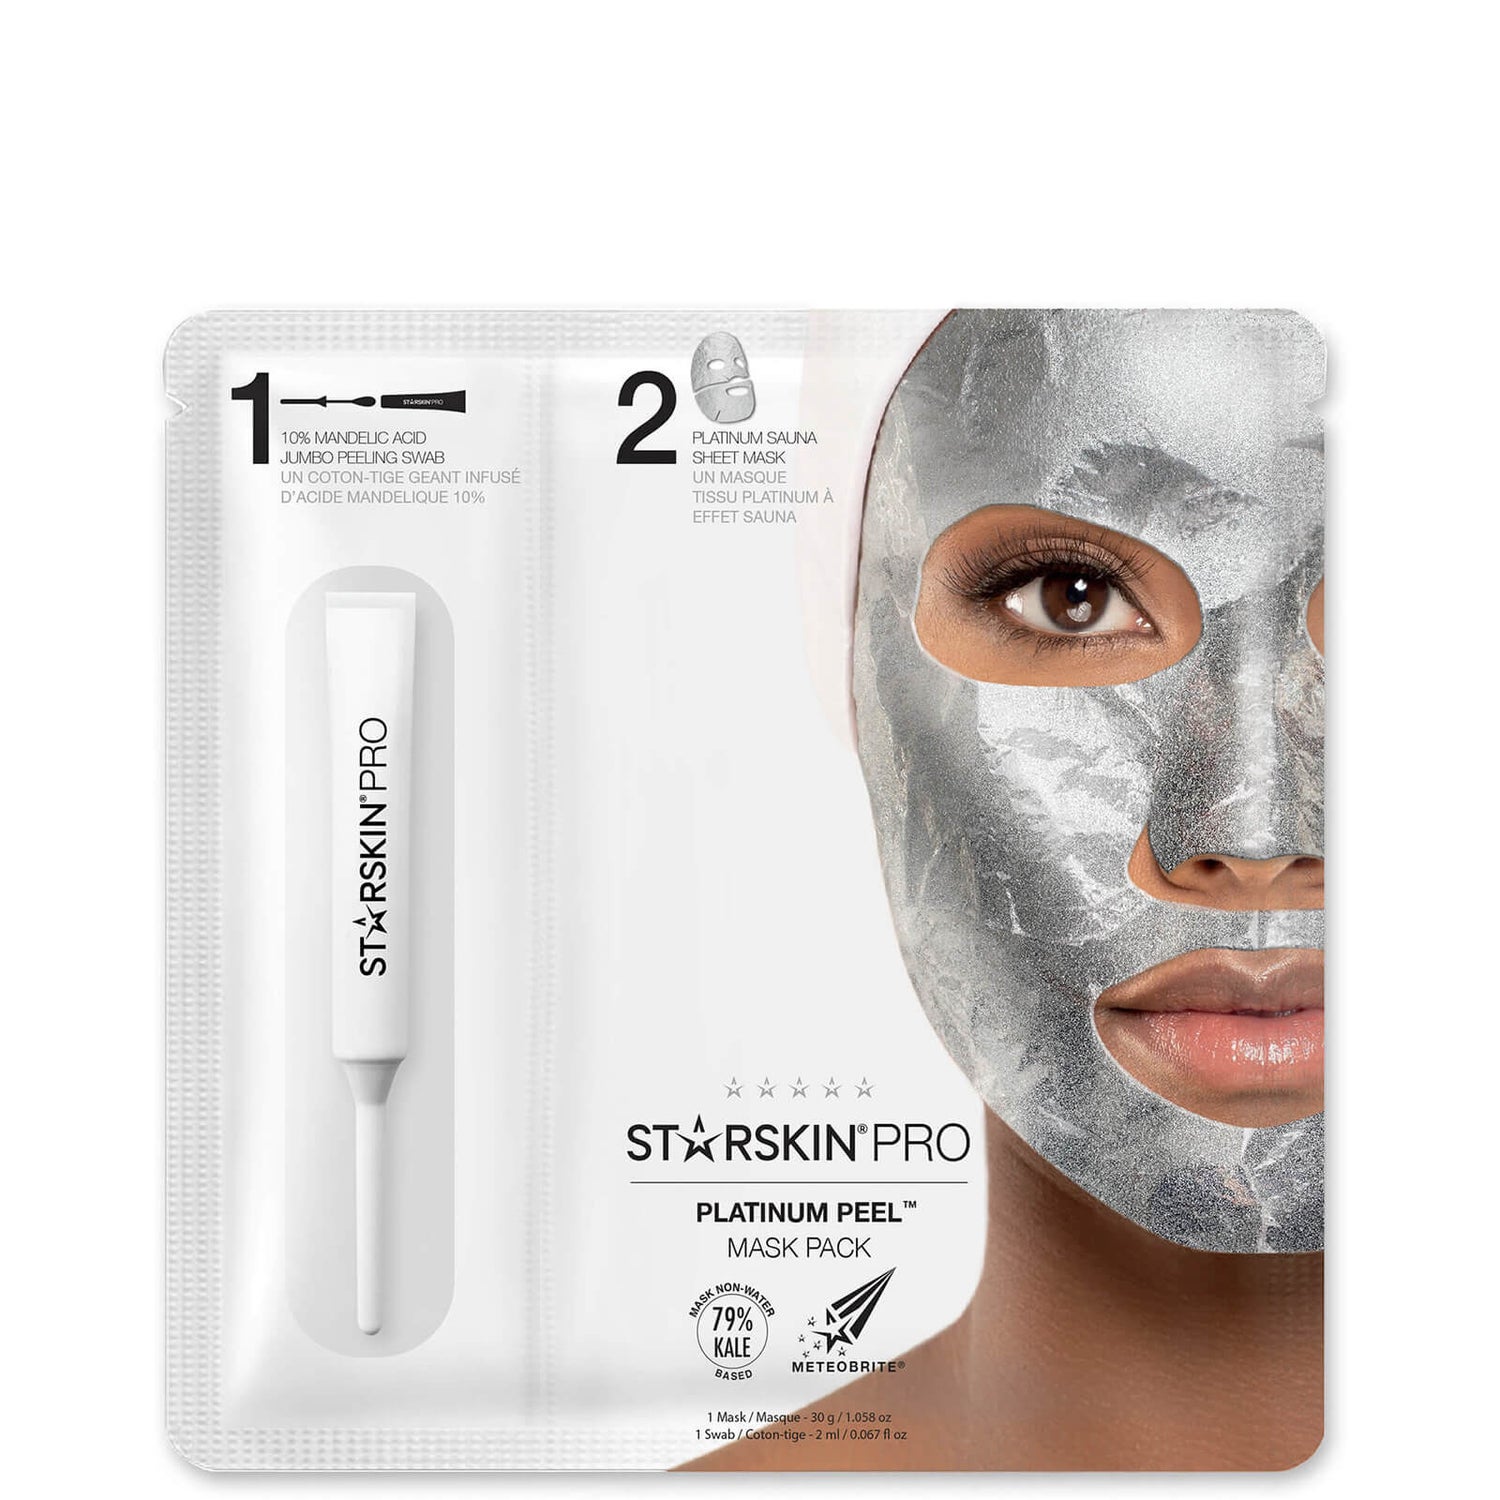 STARSKIN PRO Platinum Peel Mask Pack 40 g